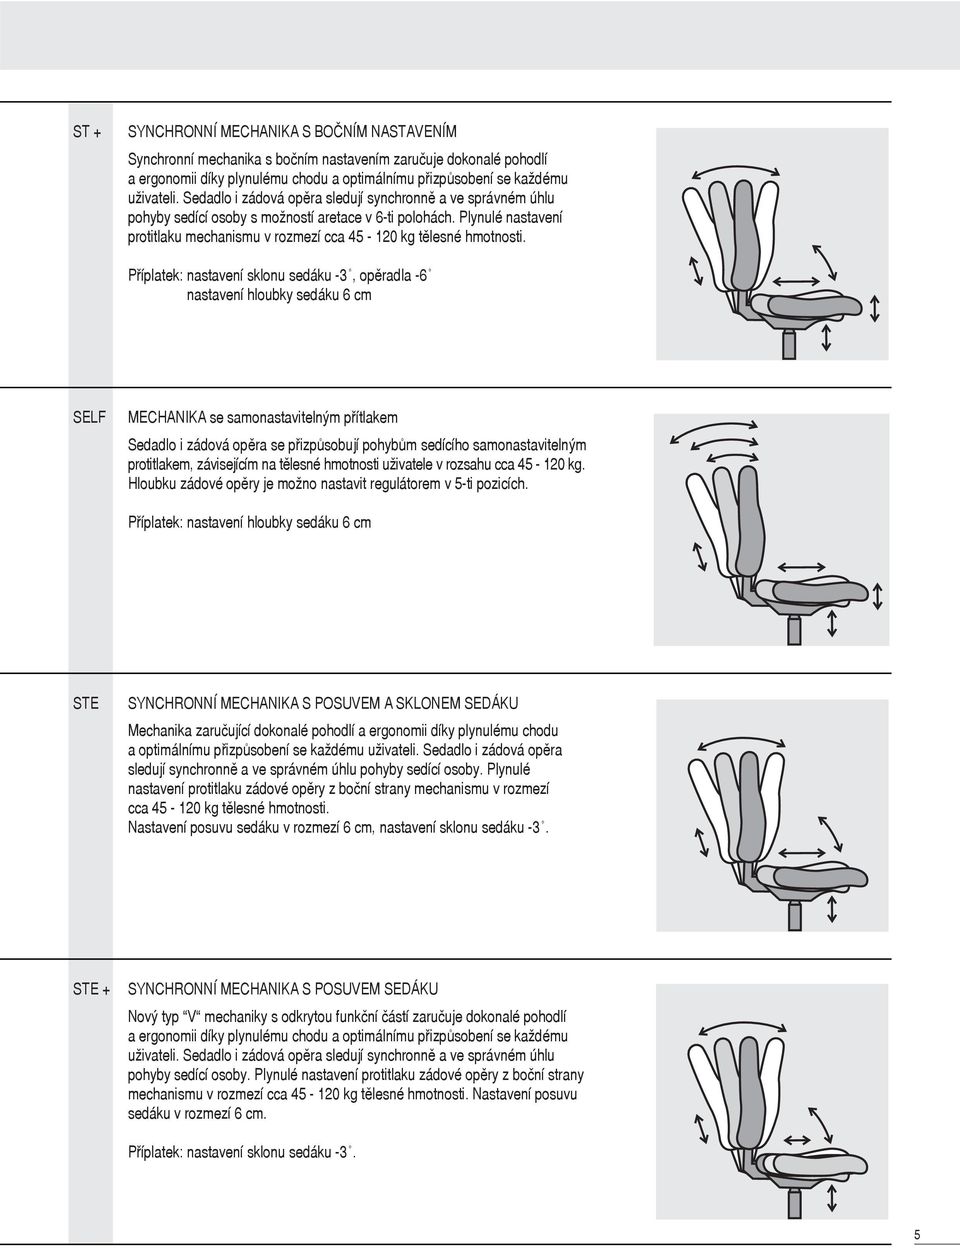 Příplatek: nastavení sklonu sedáku -3, opěradla -6 nastavení hloubky sedáku 6 cm SELF MECHANIKA se samonastavitelným přítlakem Sedadlo i zádová opěra se přizpůsobují pohybům sedícího